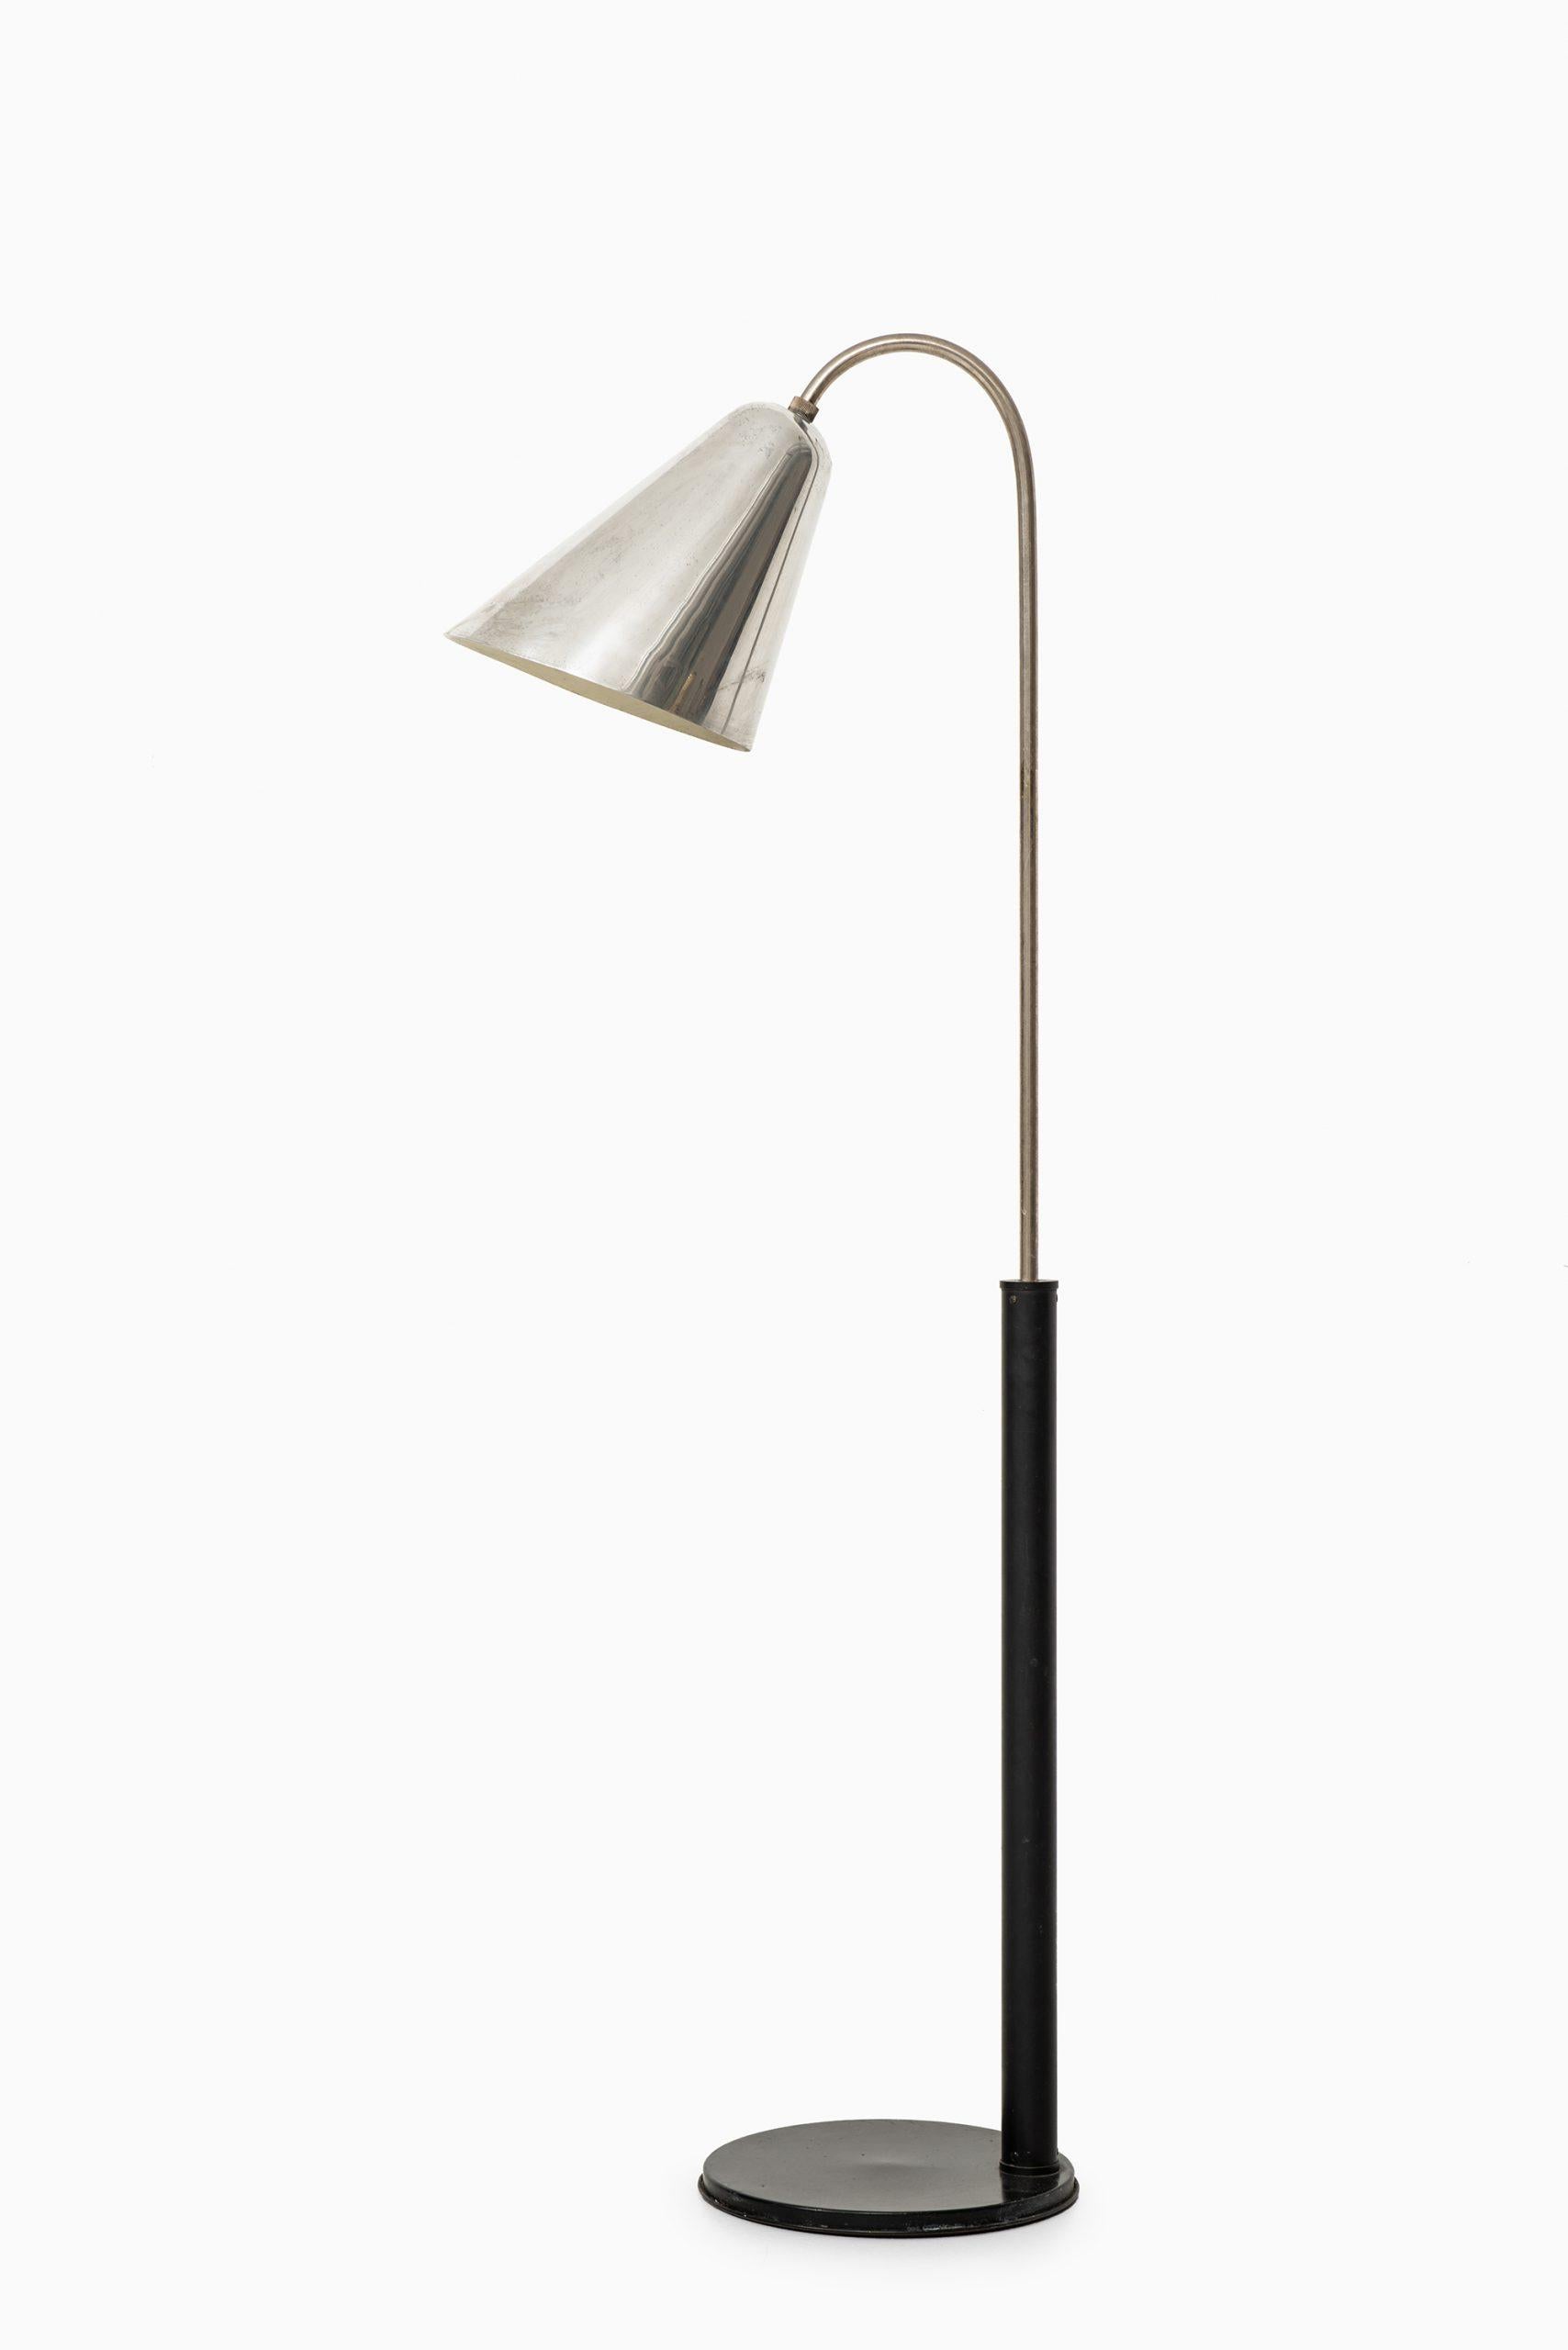 Scandinavian Modern Vilhelm Lauritzen & Frits Schlegel Floor Lamp by Fritzsche’s Glashandel